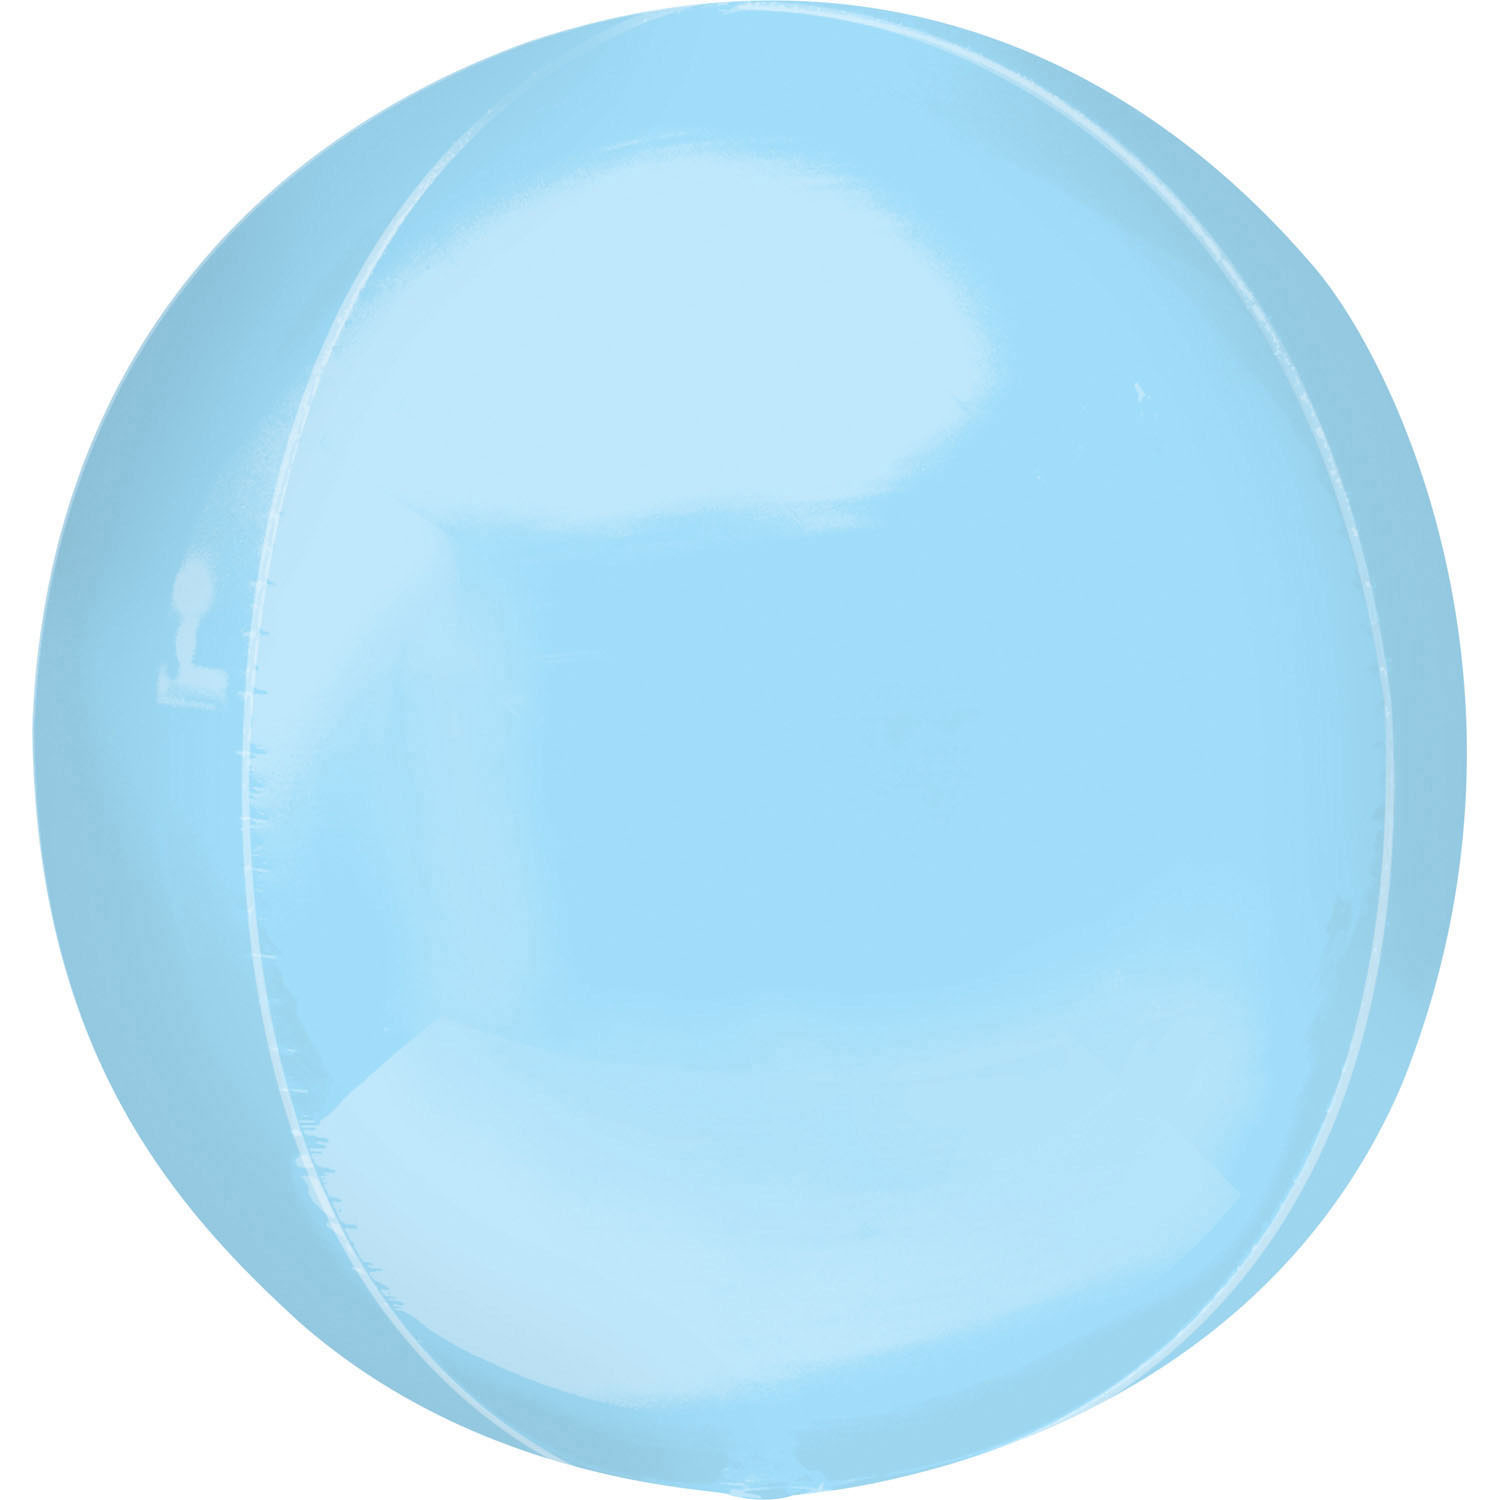 Balon foliowy kula ORBZ pastelowy niebieski 40cm, ANAGRAM